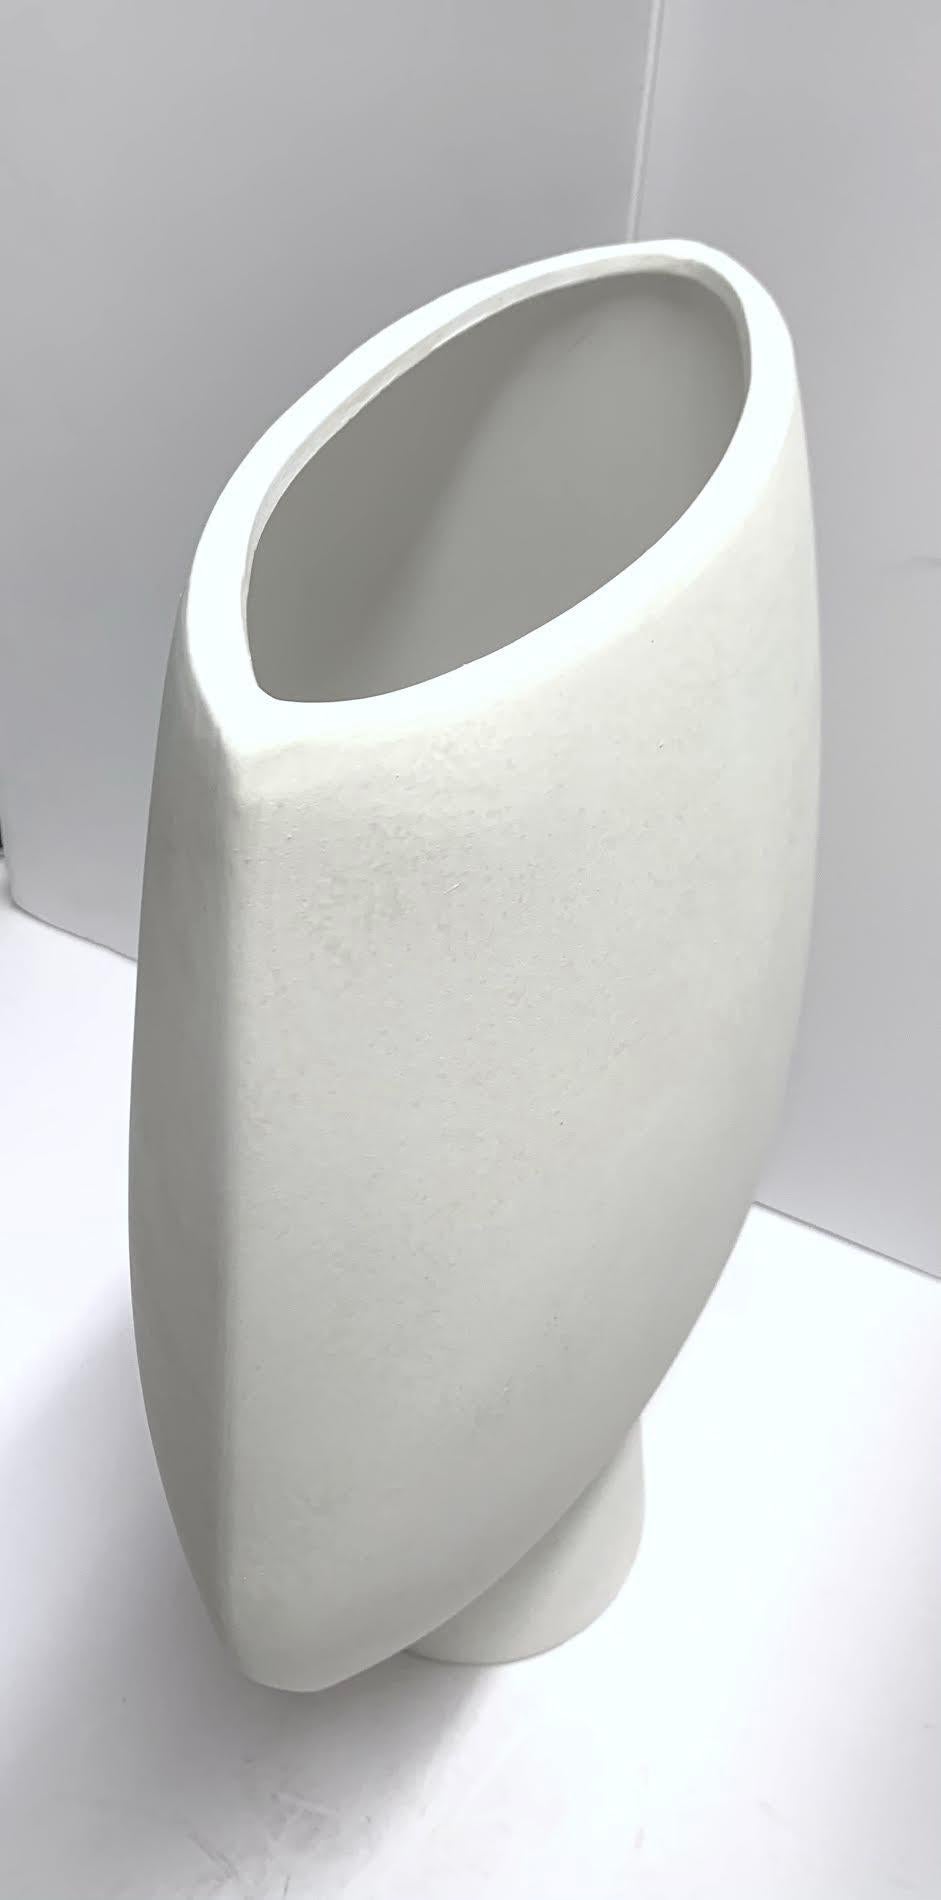 Grand vase en forme de flèche de conception danoise contemporaine.
De couleur blanche.
Fait partie d'une grande collection de vases de design danois.